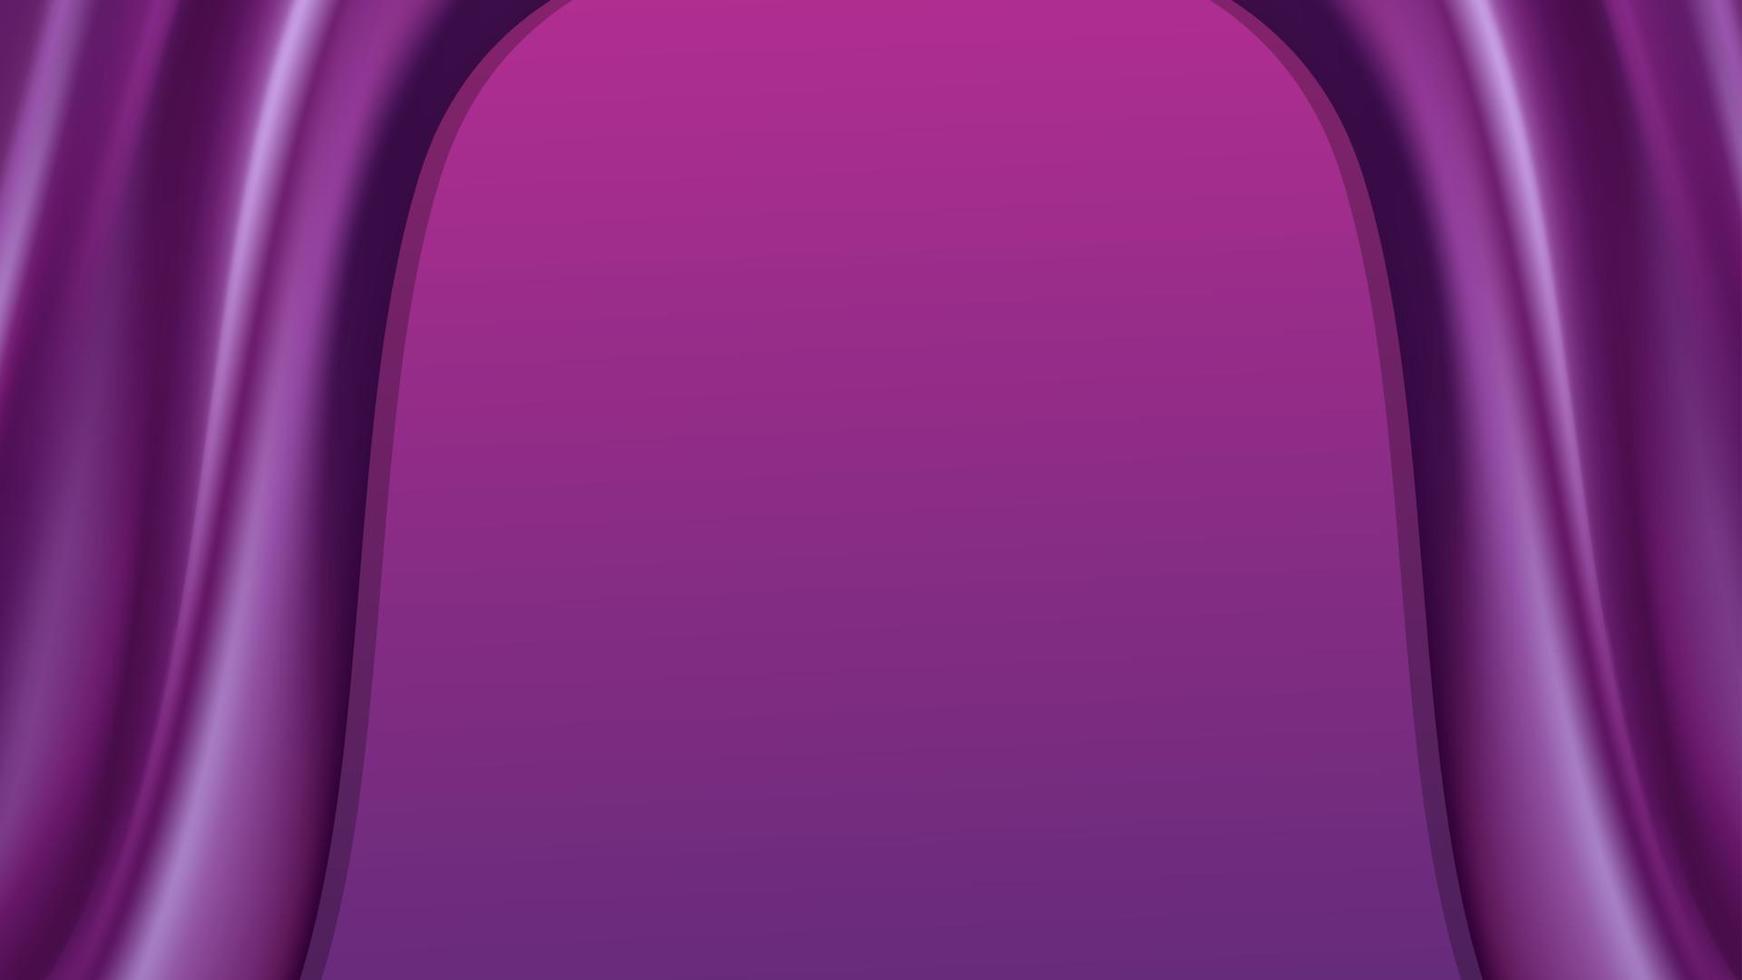 Fondo abstracto de onda púrpura de vector